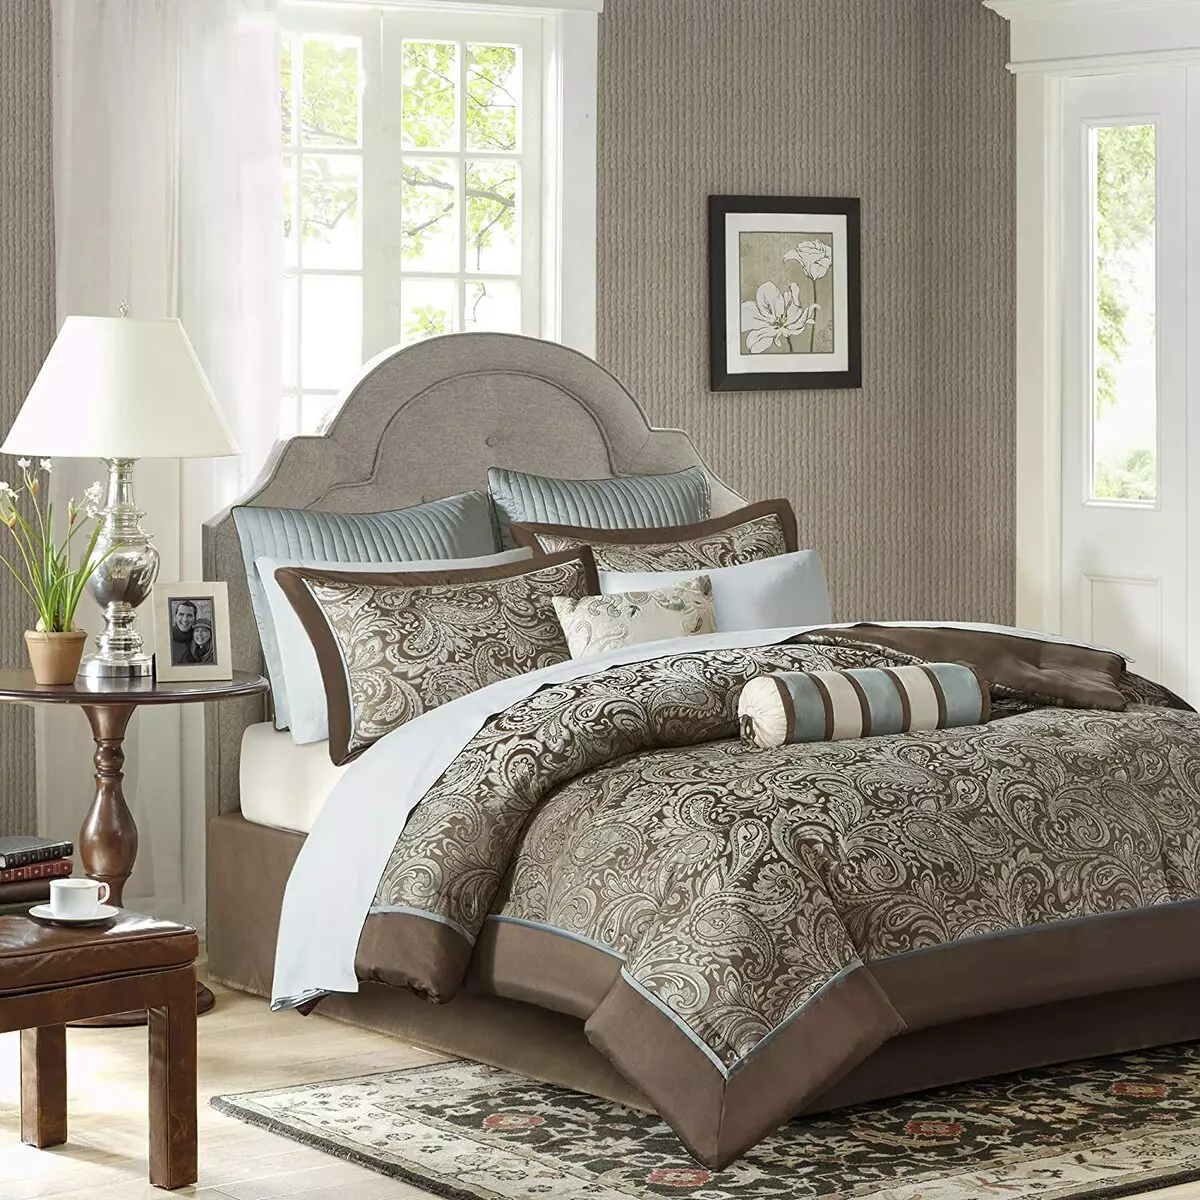 أغطية السرير (53 صورة): مجموعات جميلة. ما هي مرافق النوم هي الأكثر جودة جيدة وكيفية اختيارها؟ إنتاج 24720_4